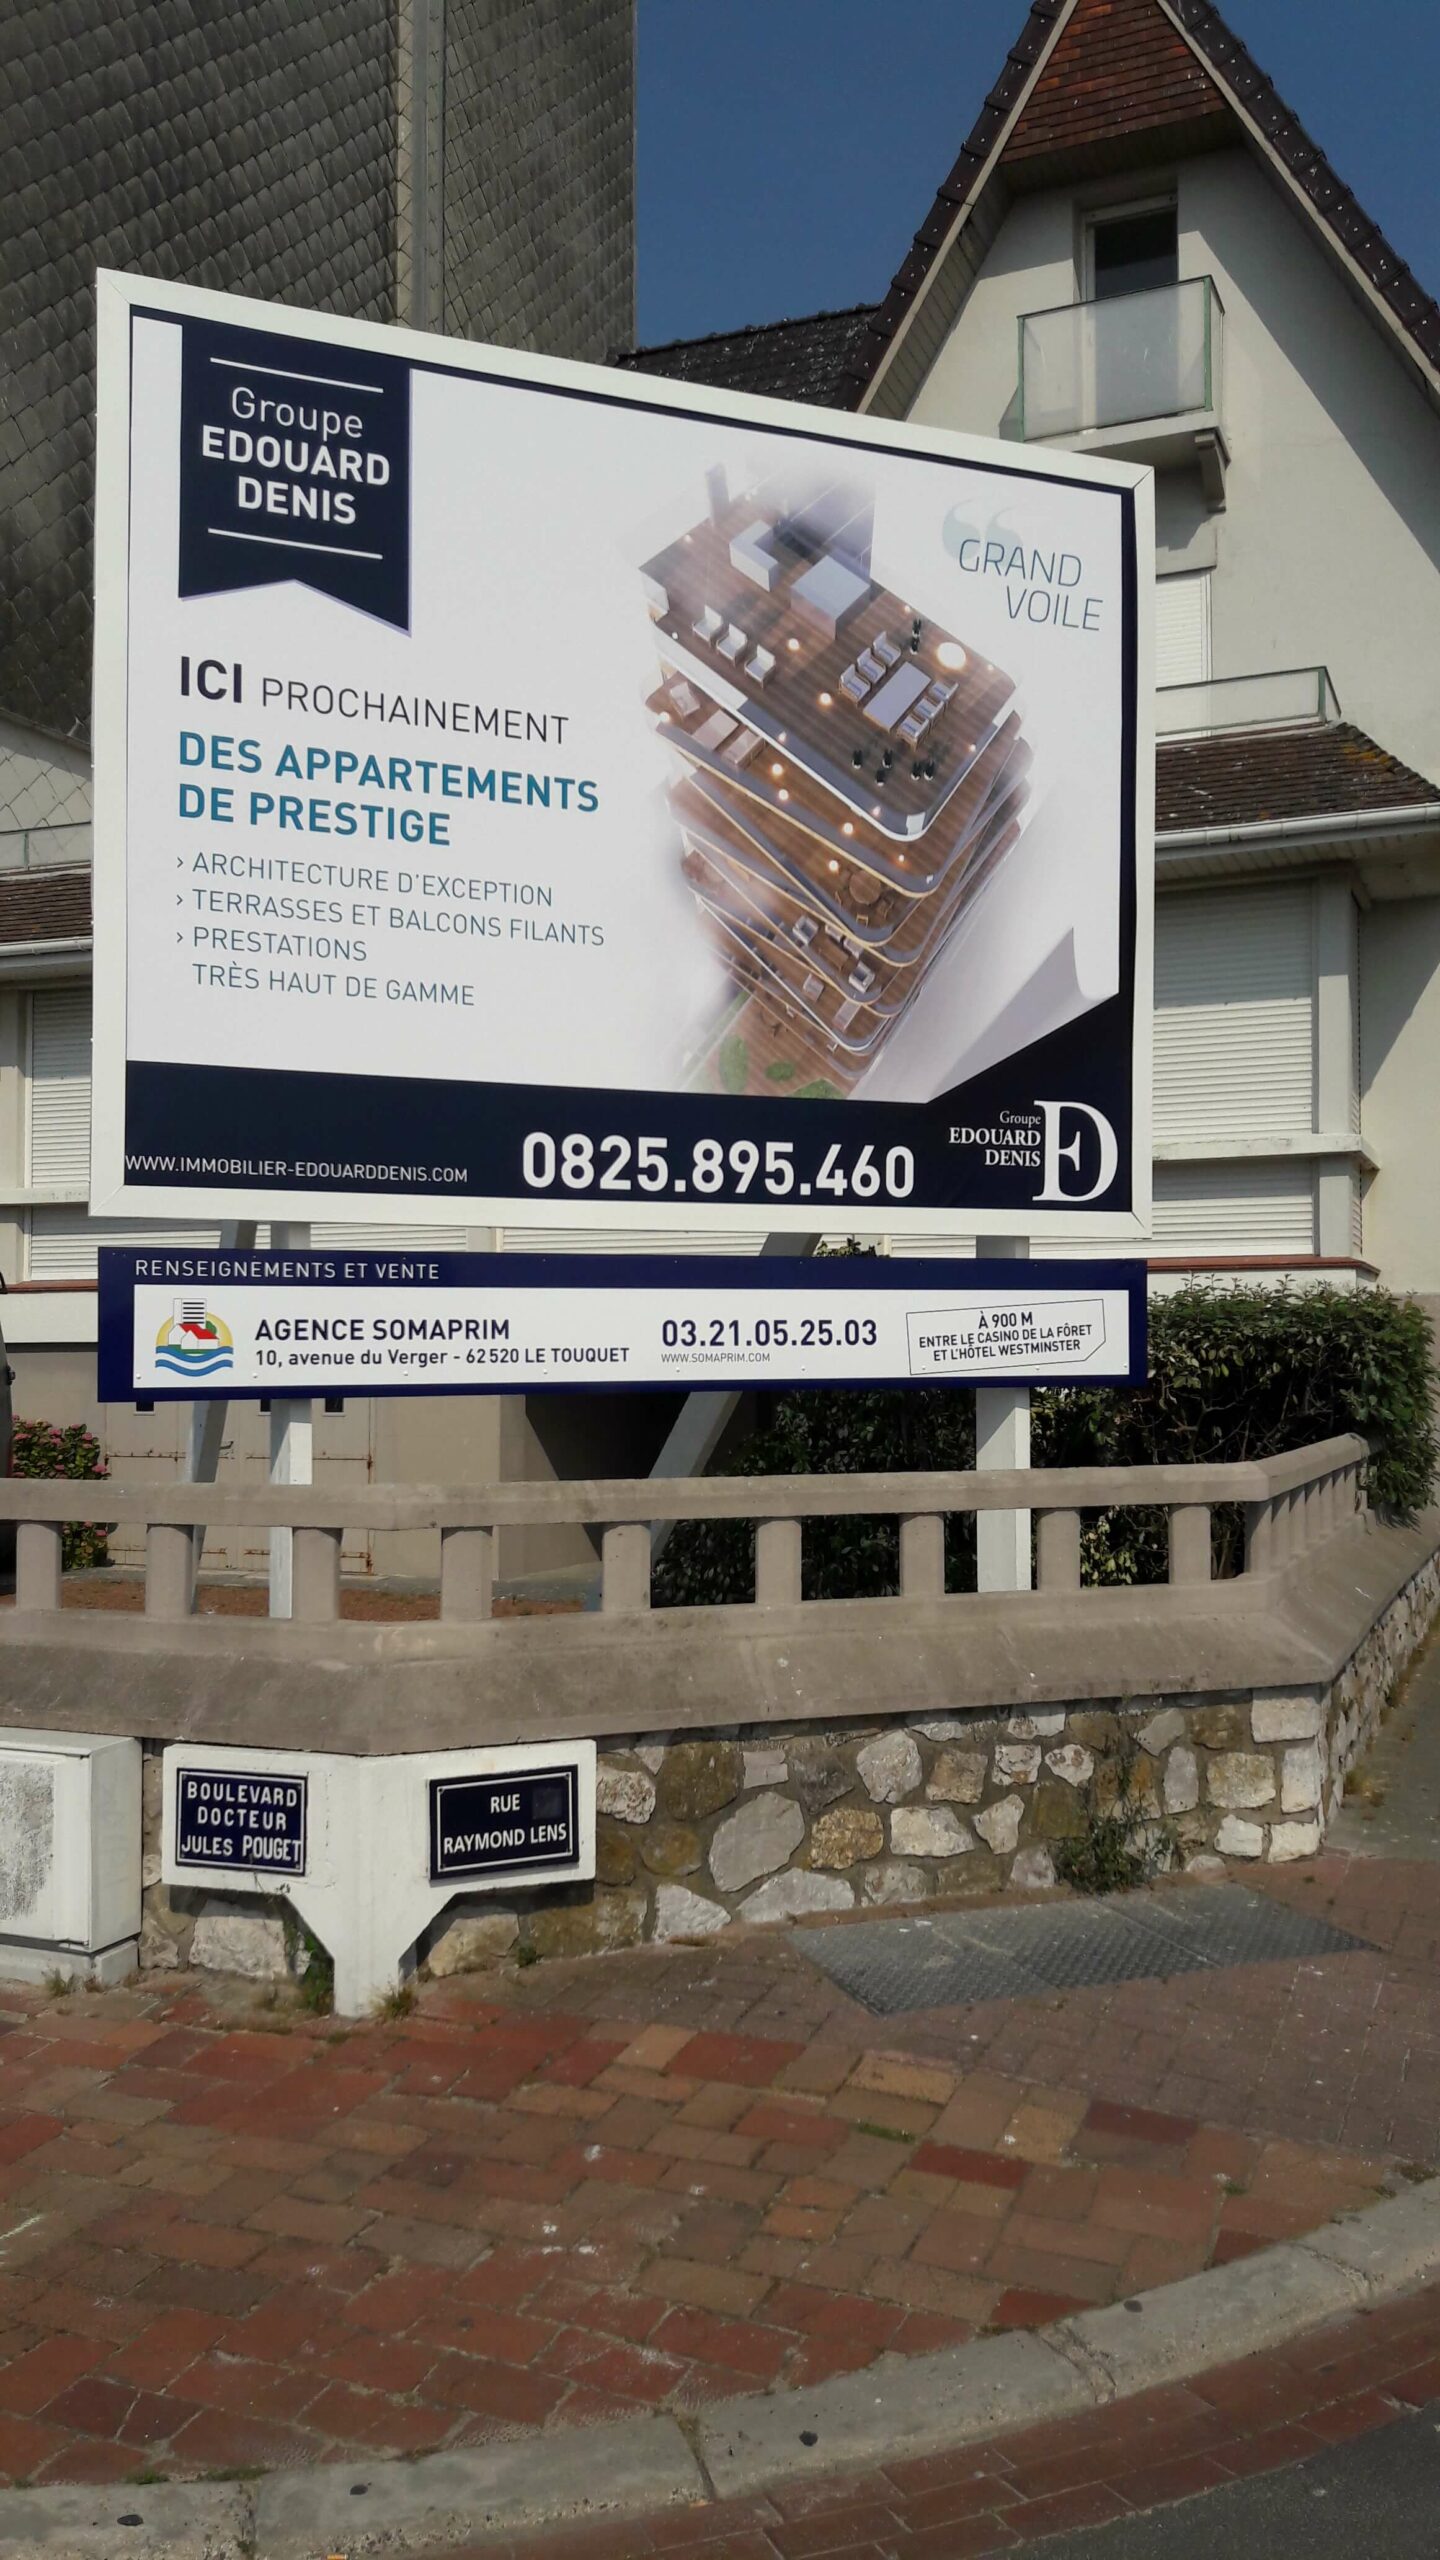 Panneau publicitaire Edouard Denis Ici prochainement des appartements de prestige